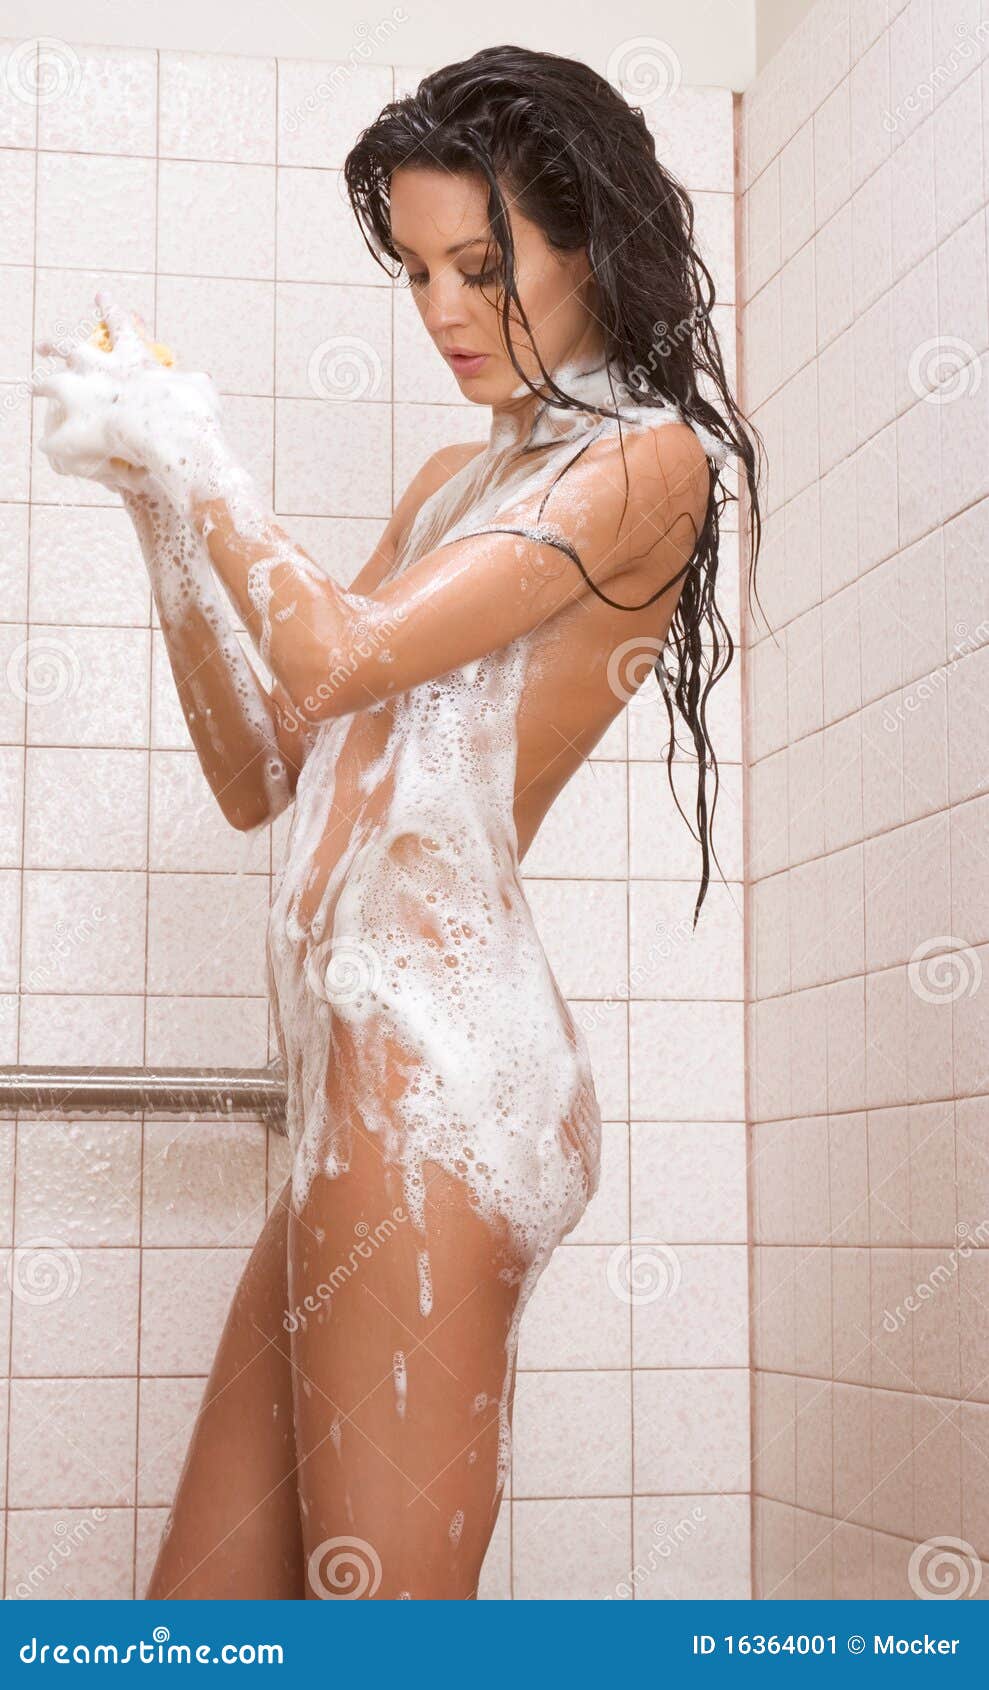 Hot naked women in shower